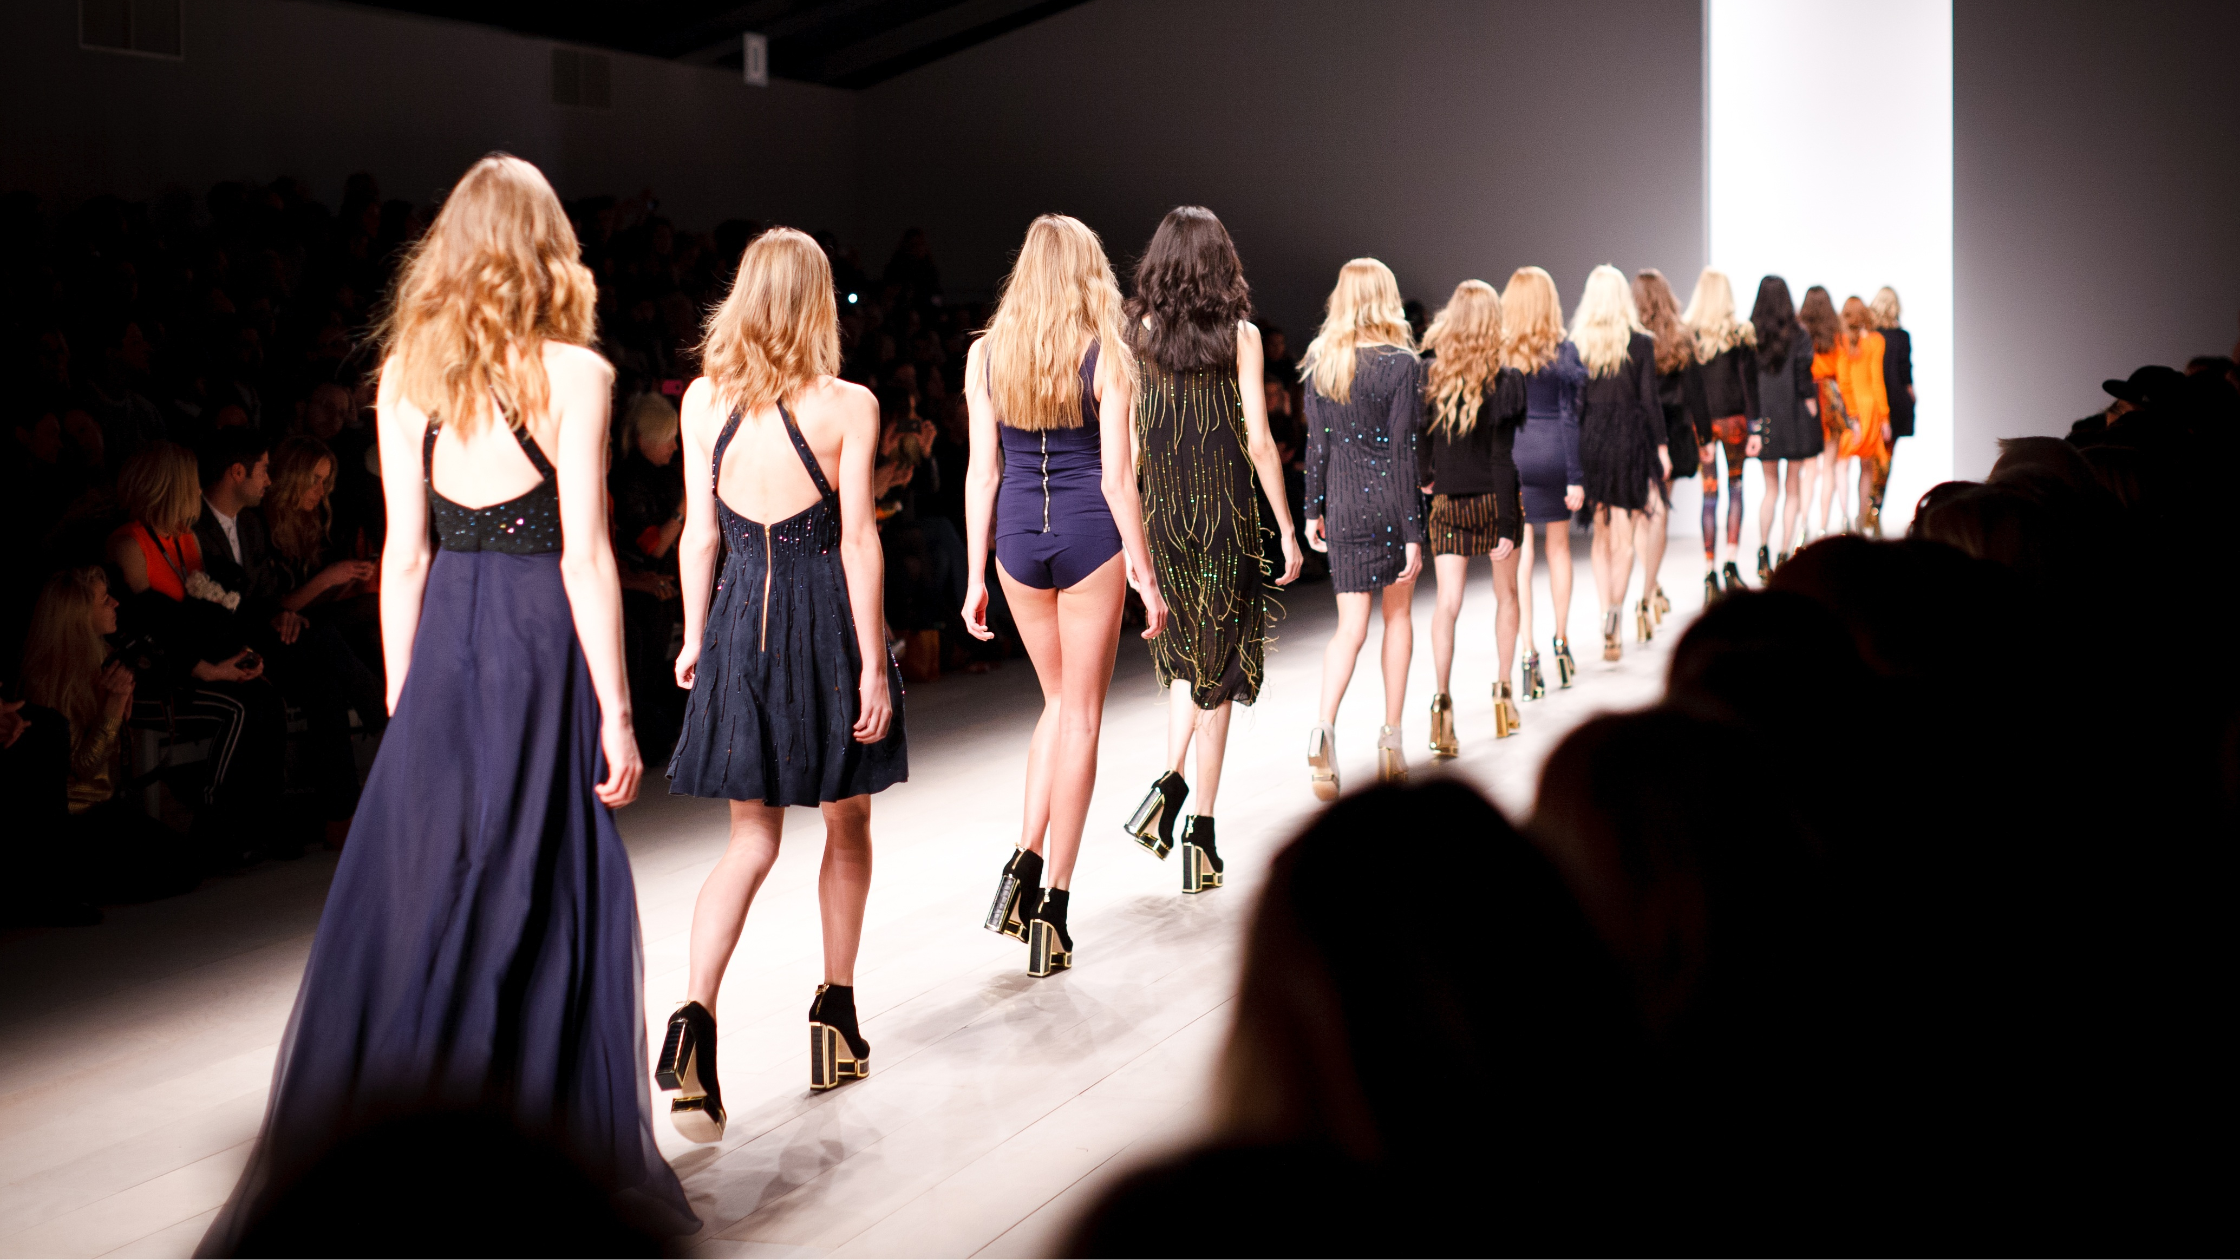 New York Fashion Week models walk catwalk